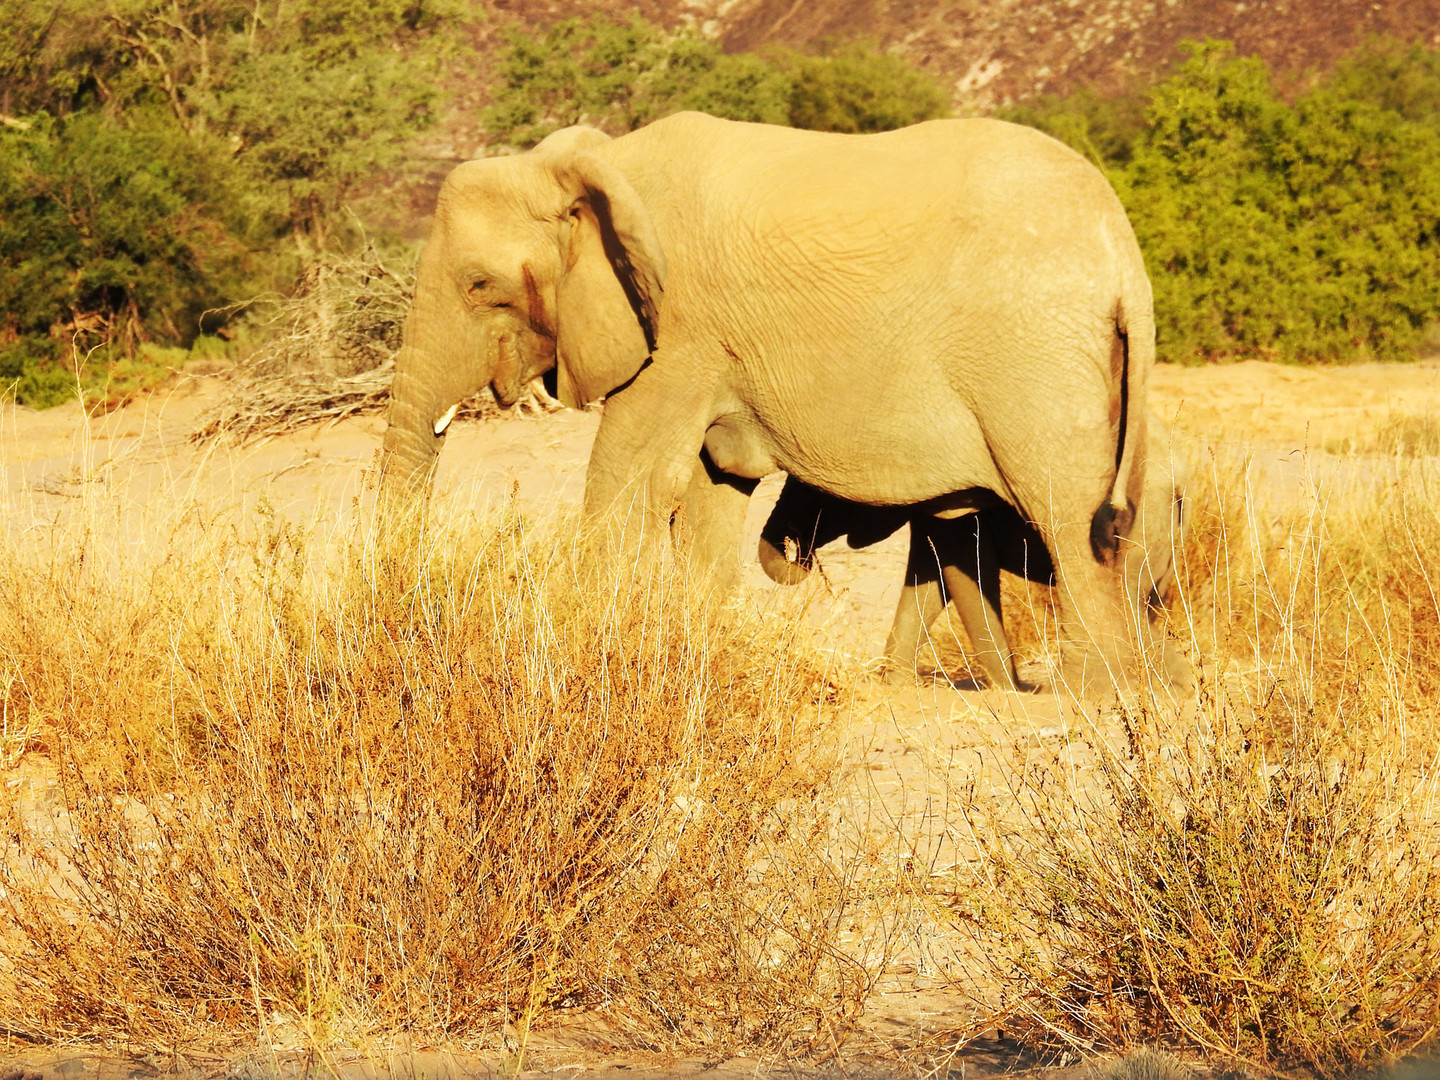 Die Elefantenkuh stellt sich schützend vor ihr Kalb.